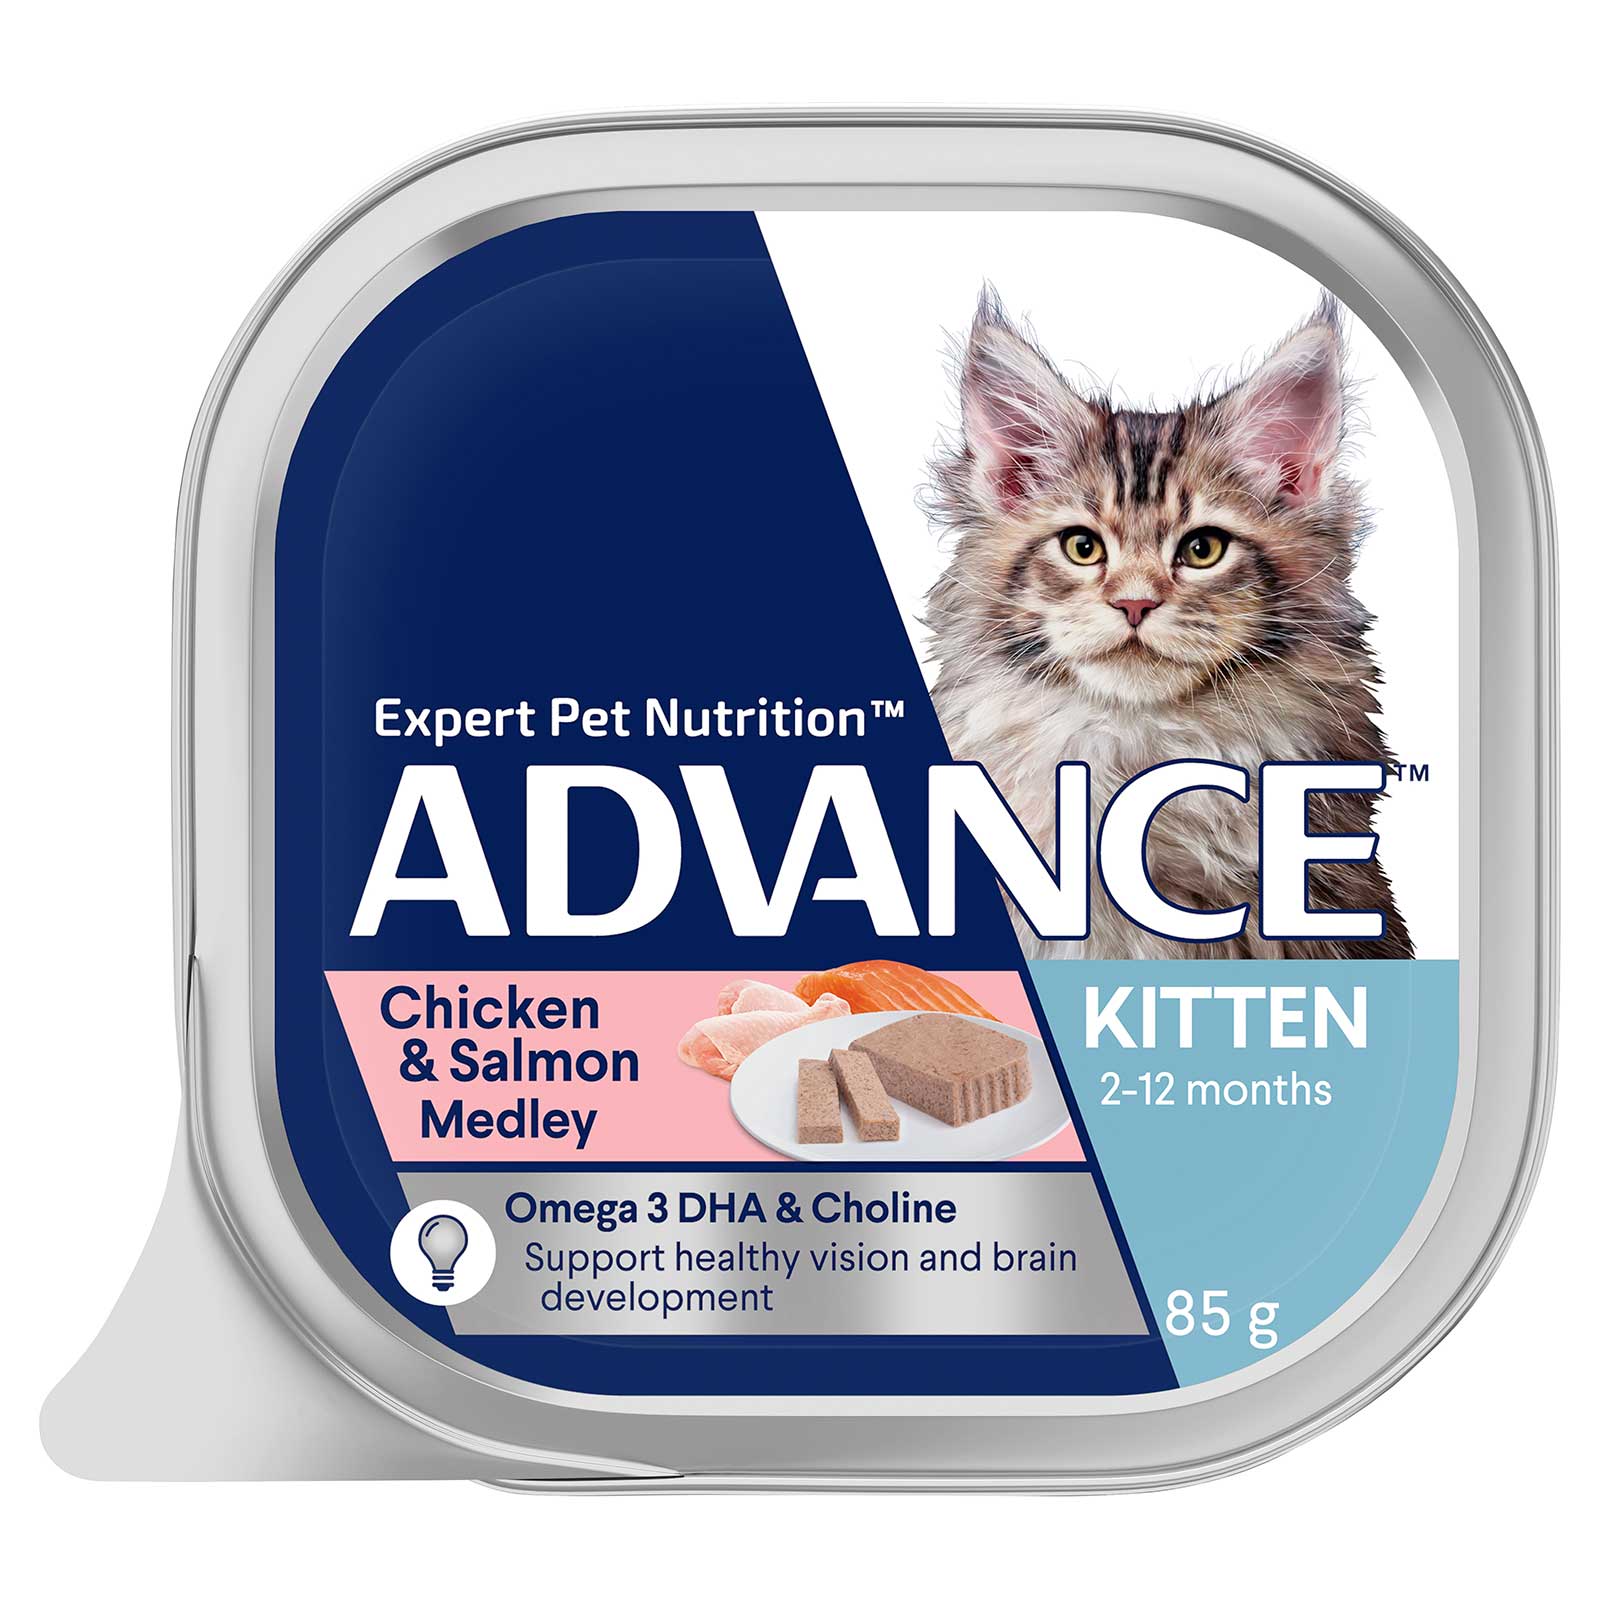 Advance Cat Food Tray Kitten Chicken & Salmon